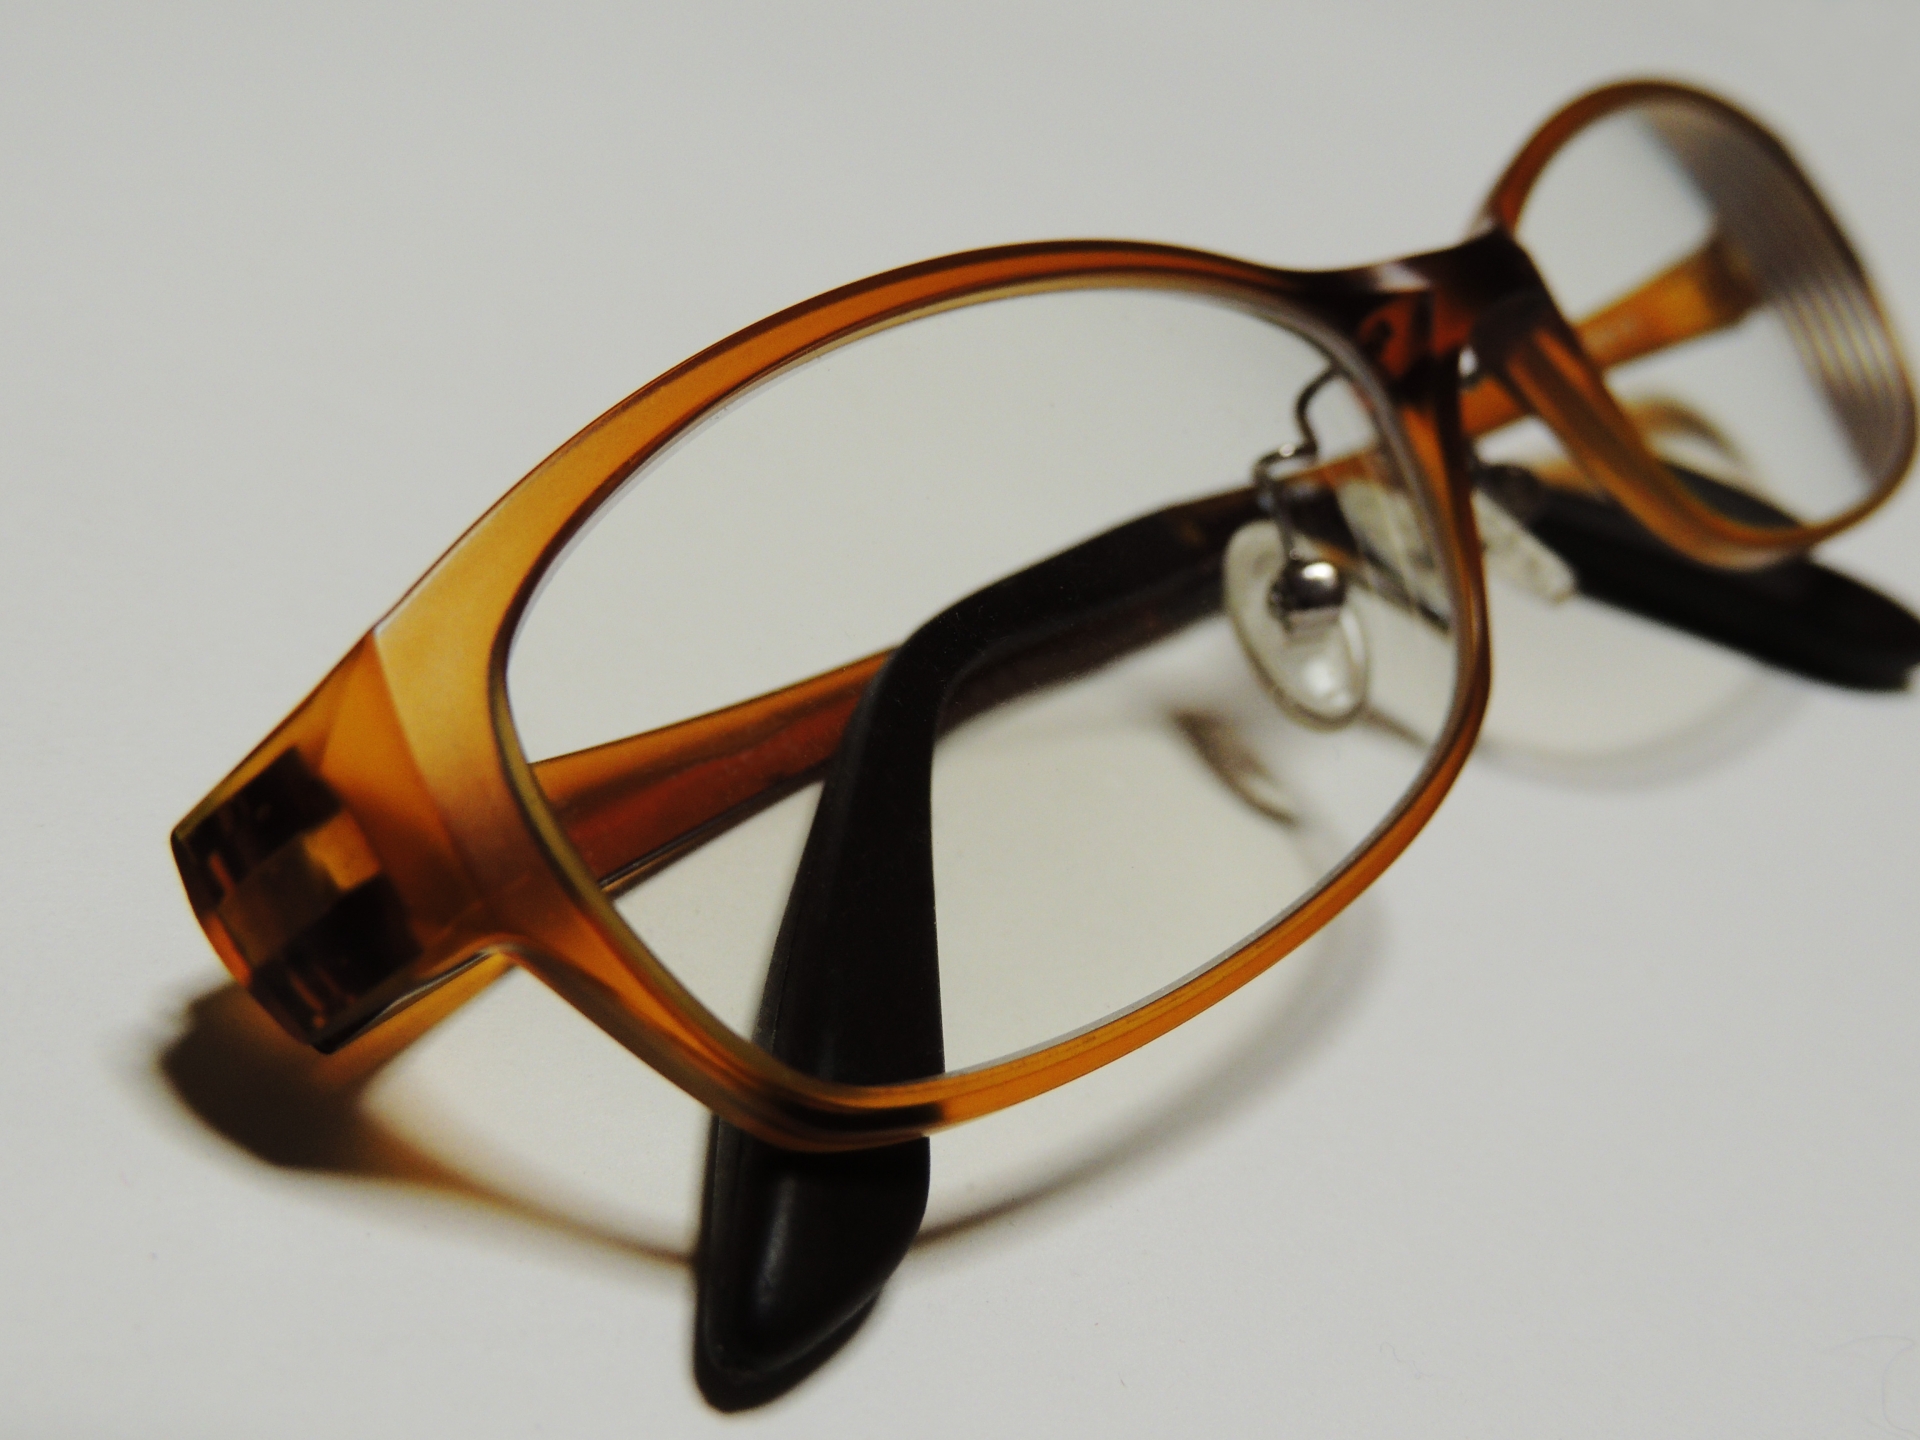 メガネのコーティングの寿命と普段の正しいレンズケアについて